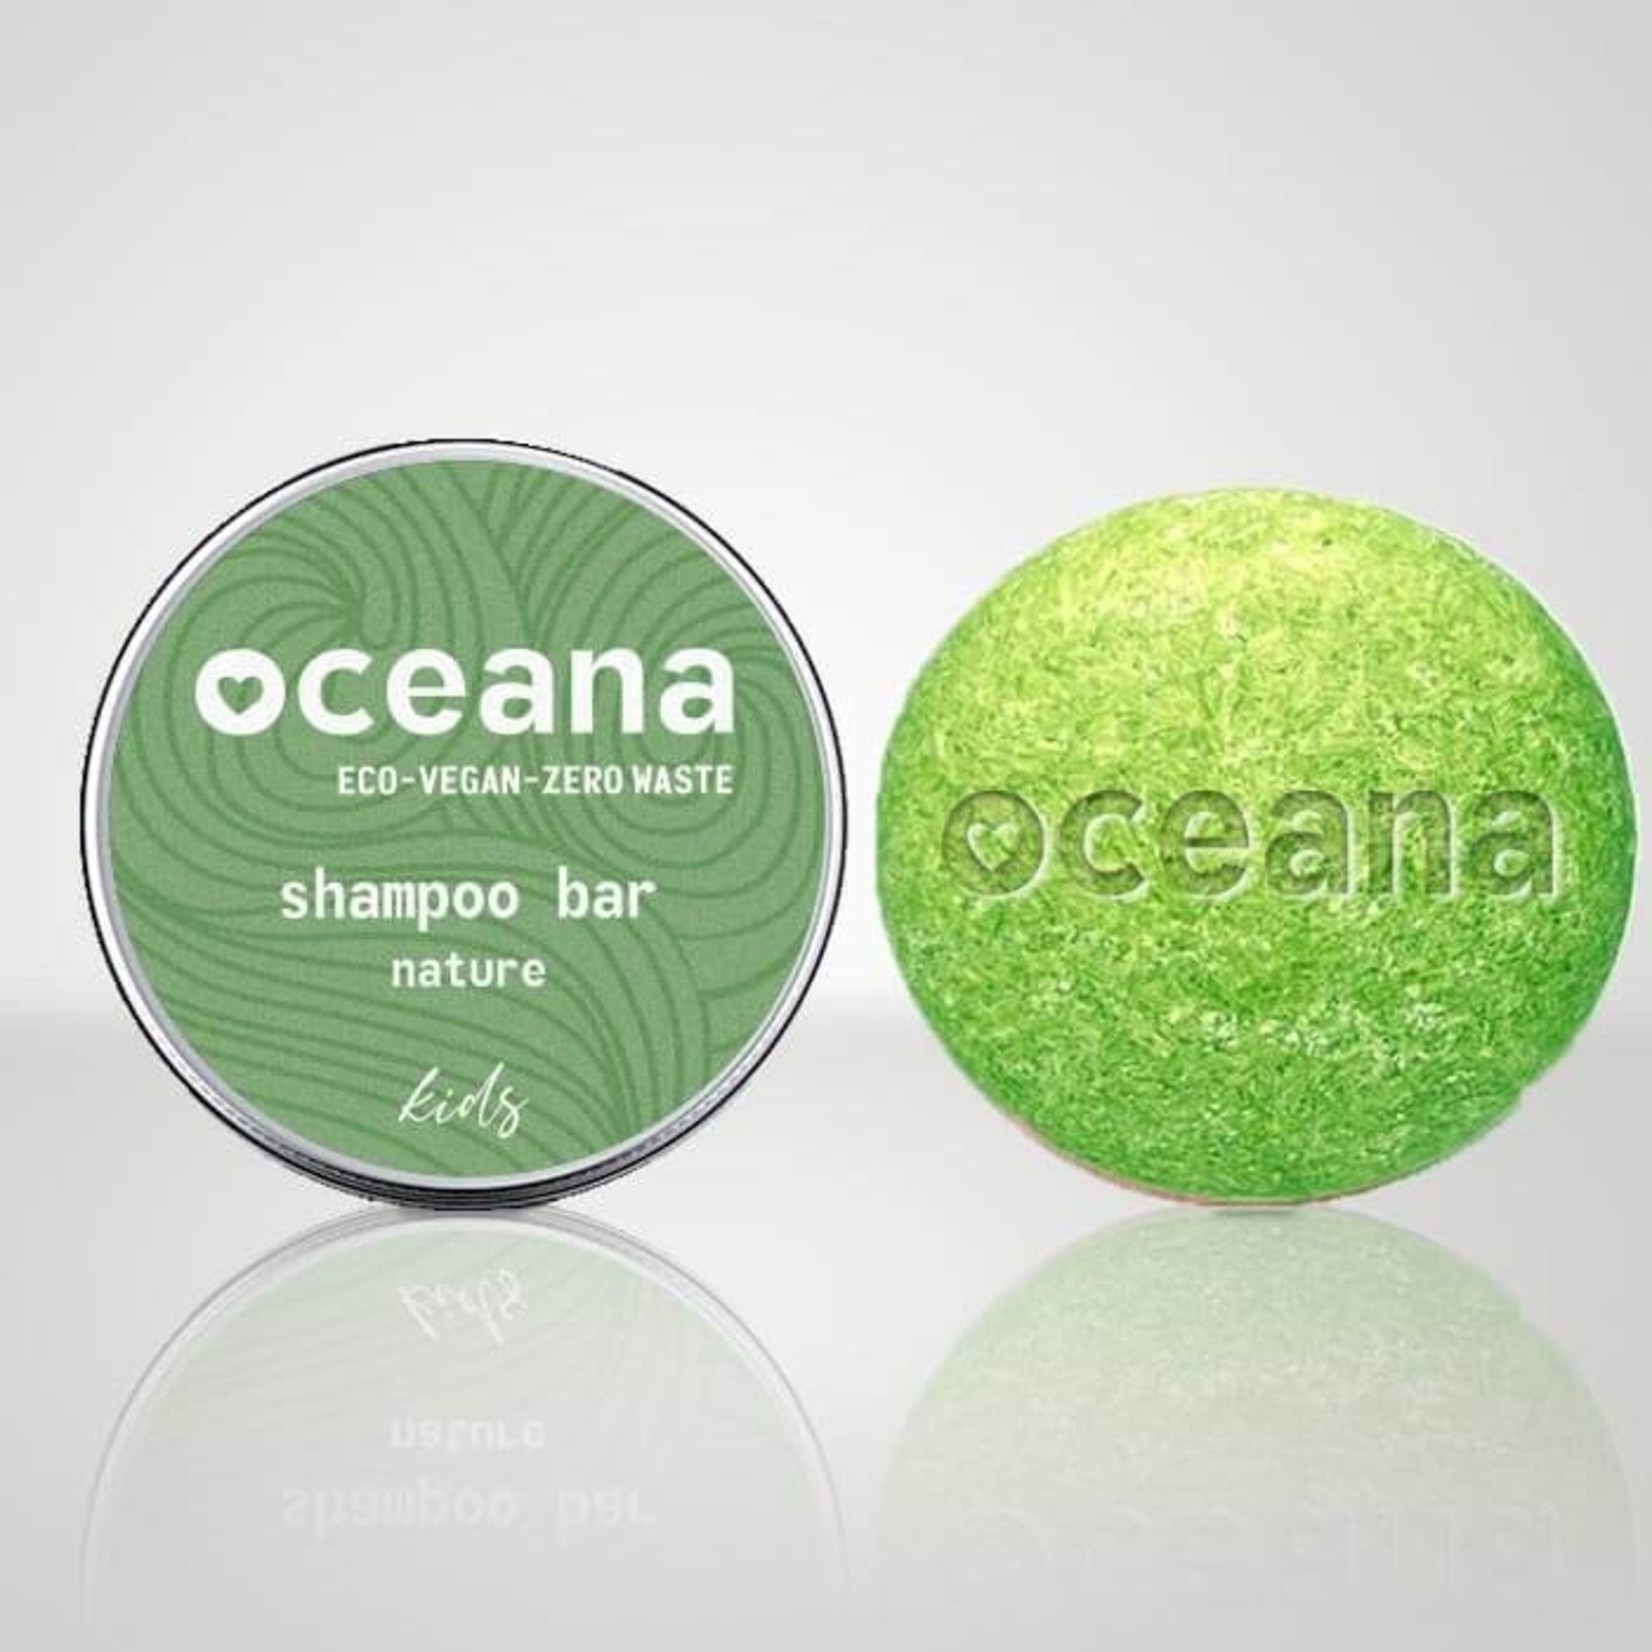 Oceana Oceana - barre de shampoing naturel pour enfants.